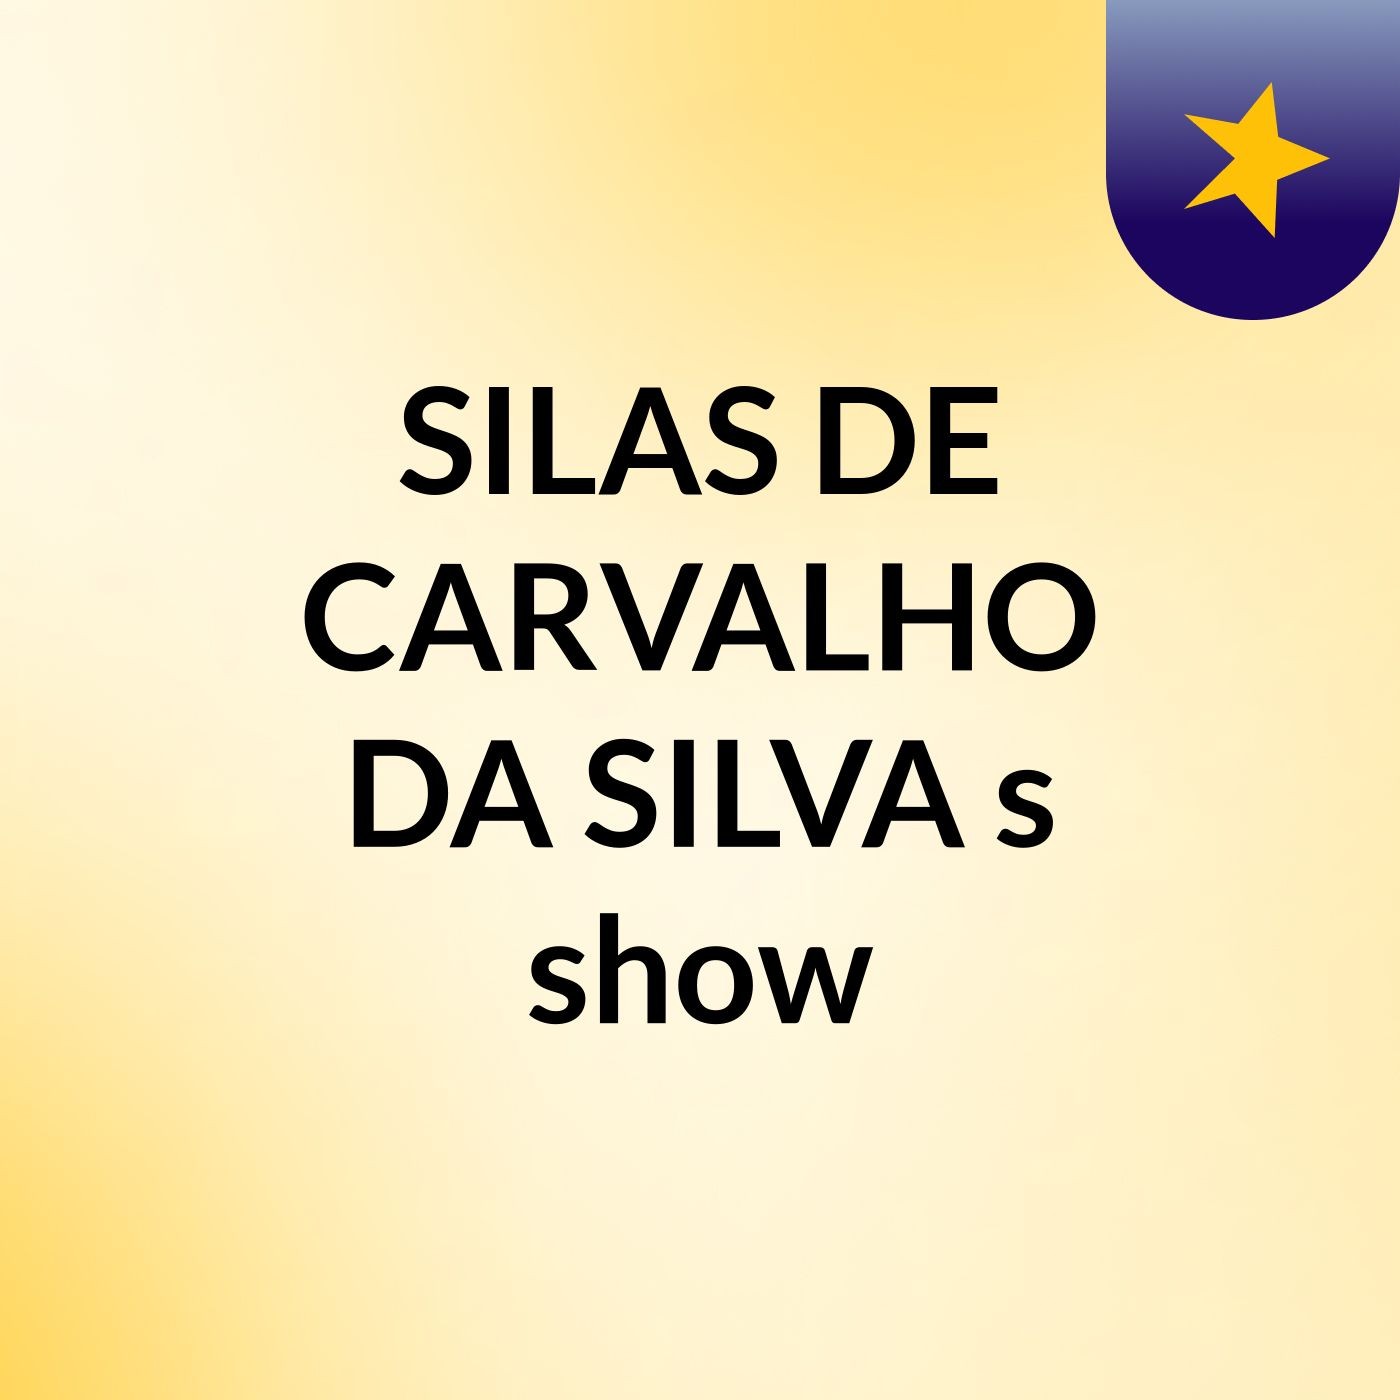 SILAS DE CARVALHO DA SILVA's show